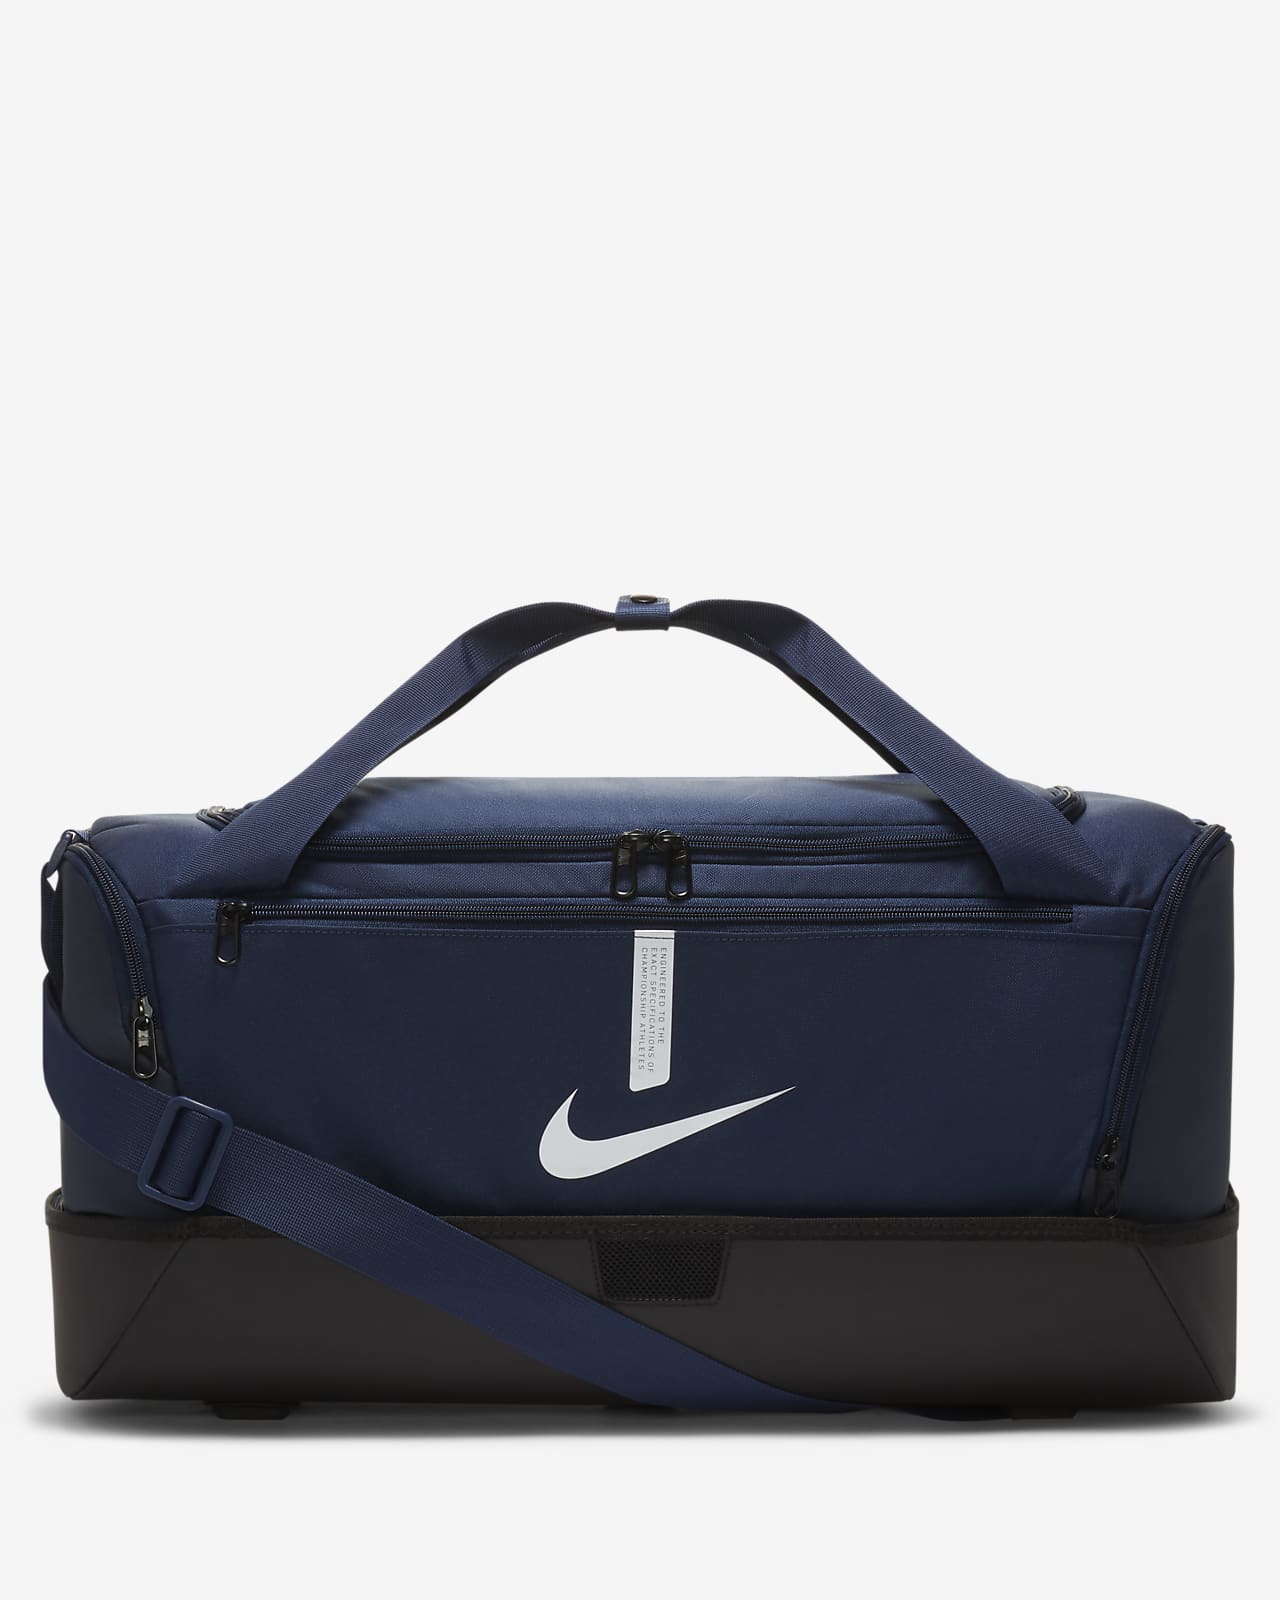 Nike Academy Team stiv duffelbag til fotball (medium, 37 L)